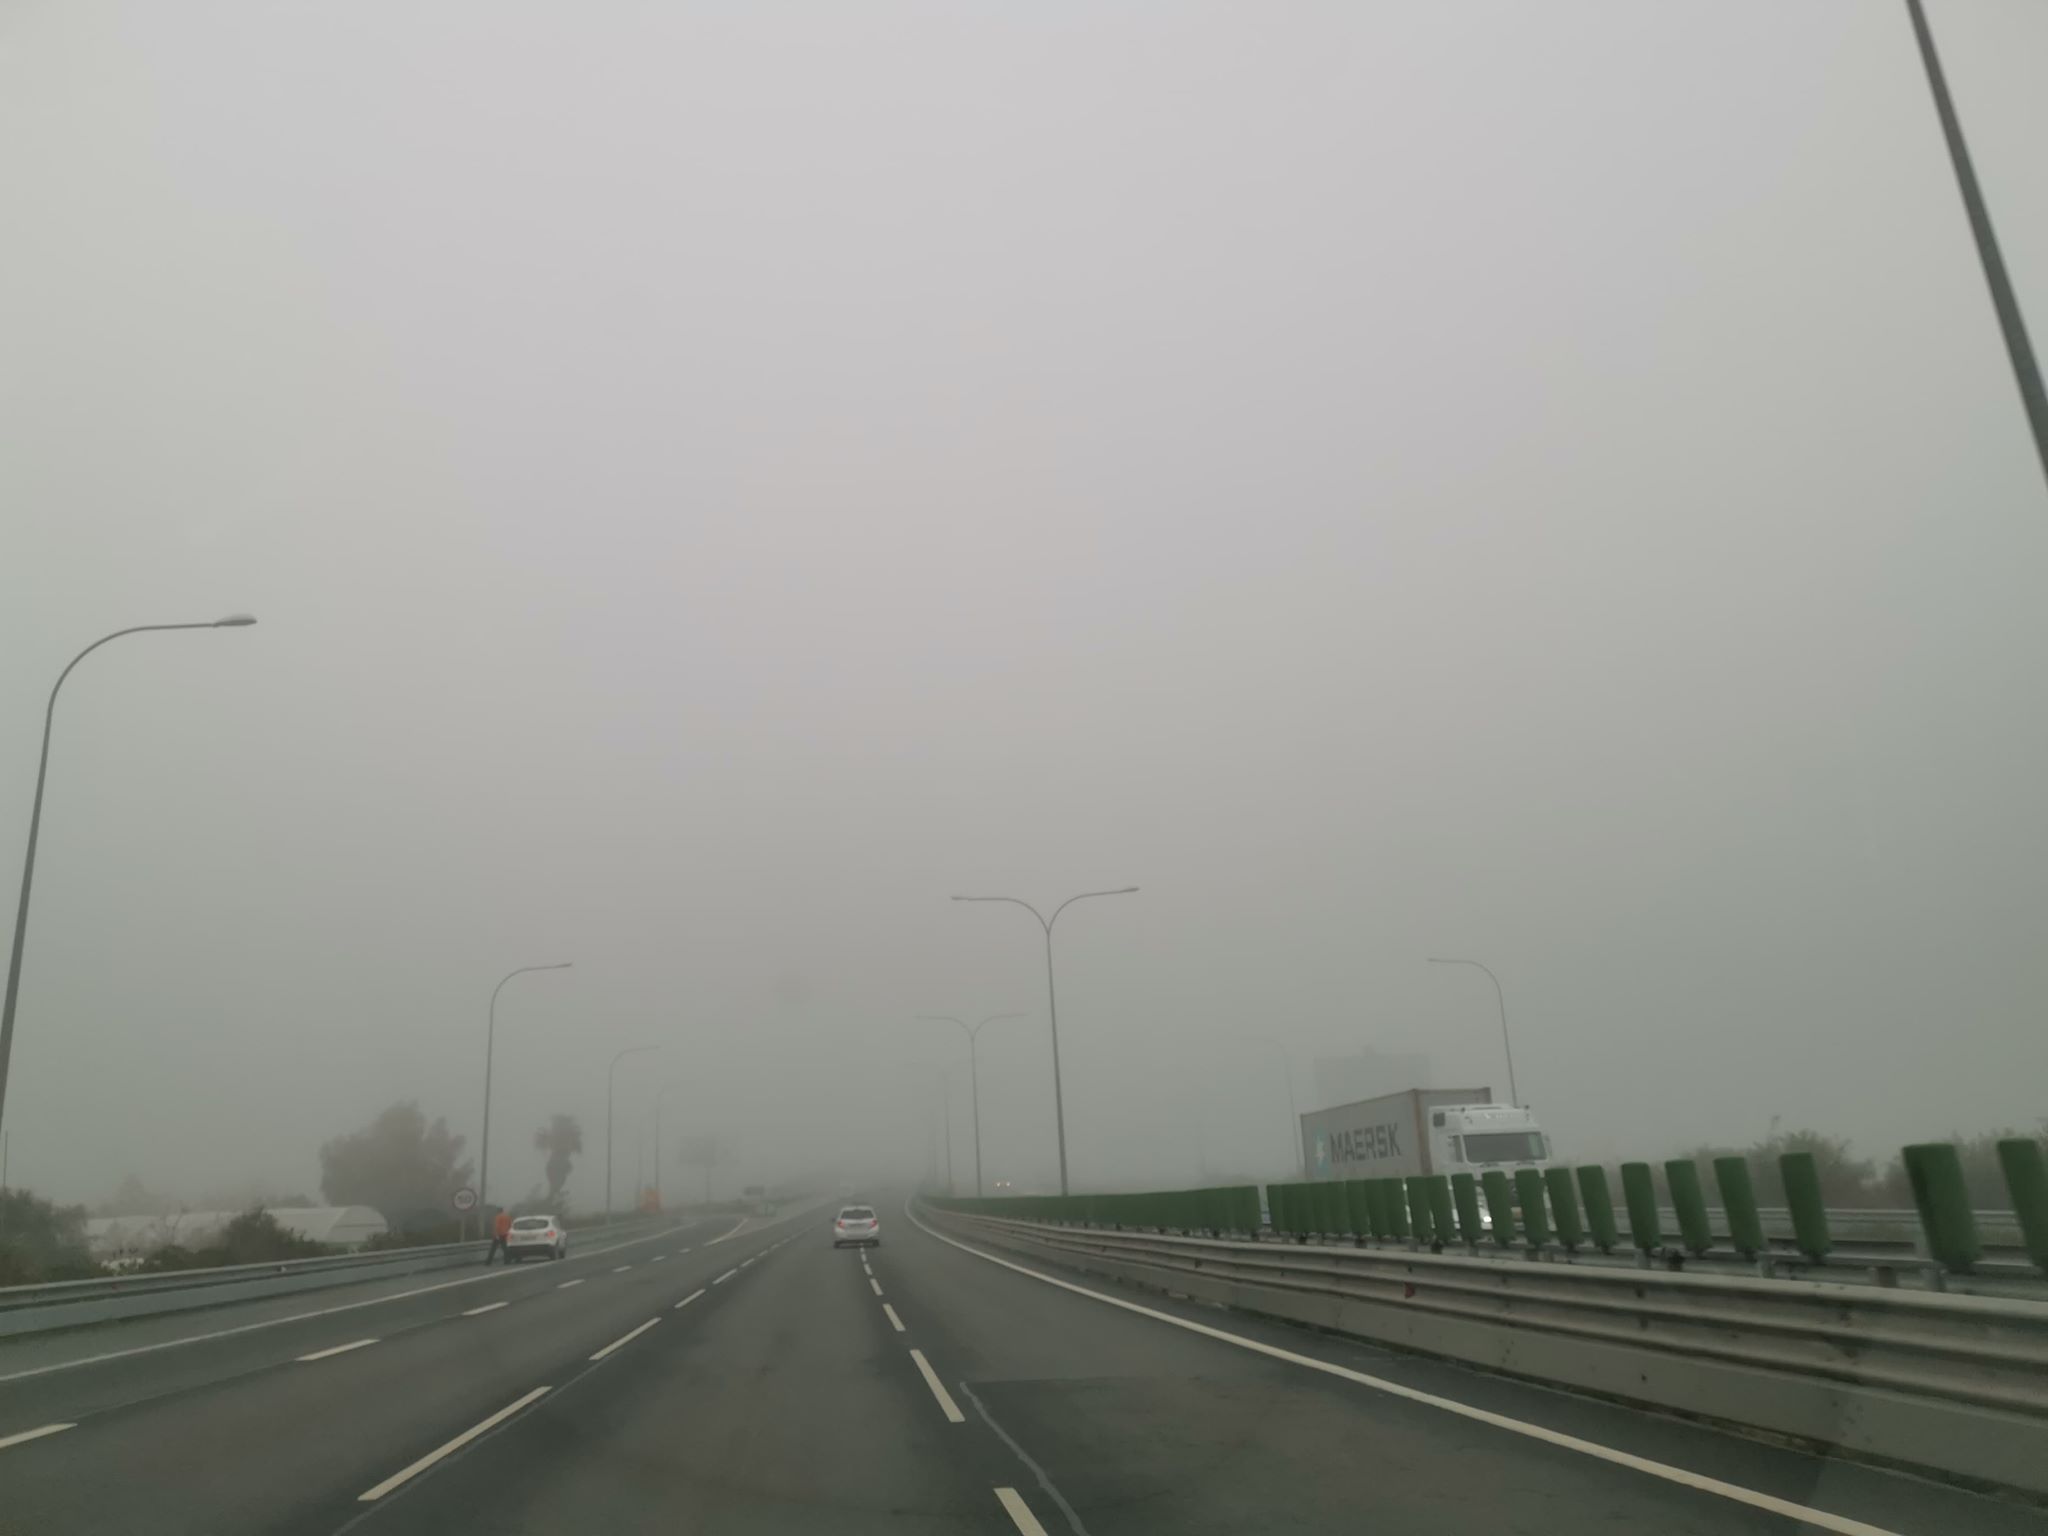 Τμ. Μετεωρολογίας: Ομίχλη και σκόνη επηρεάζουν την ατμόσφαιρα - Έρχεται πτώση της θερμοκρασίας 